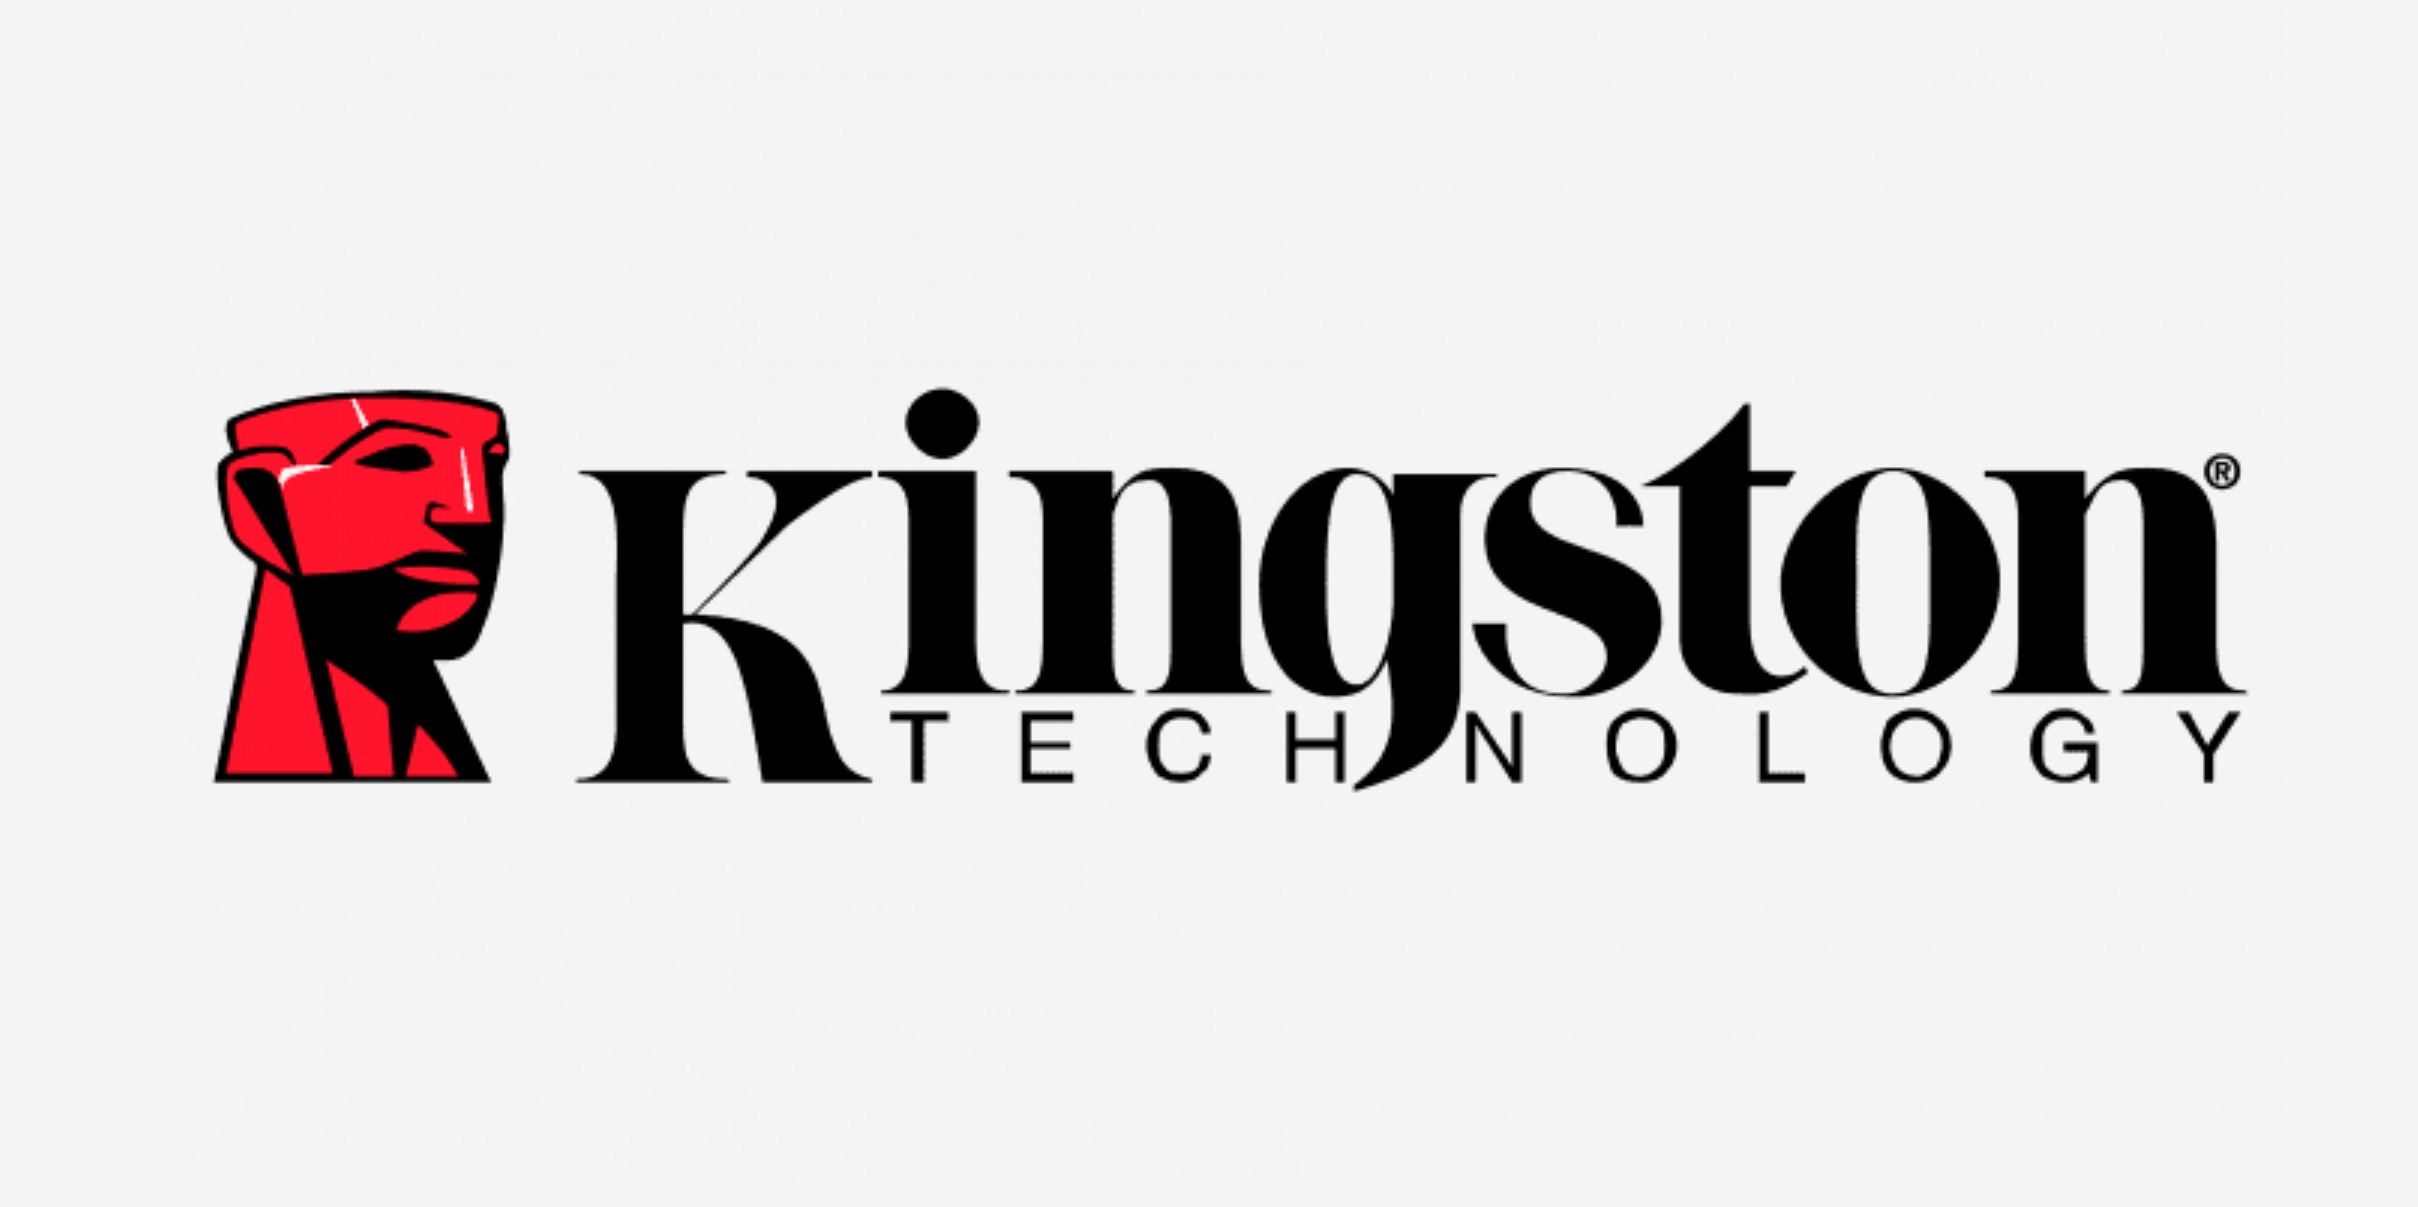 Ga Kingston un sondaggio sul nostro rapporto con la tecnologia